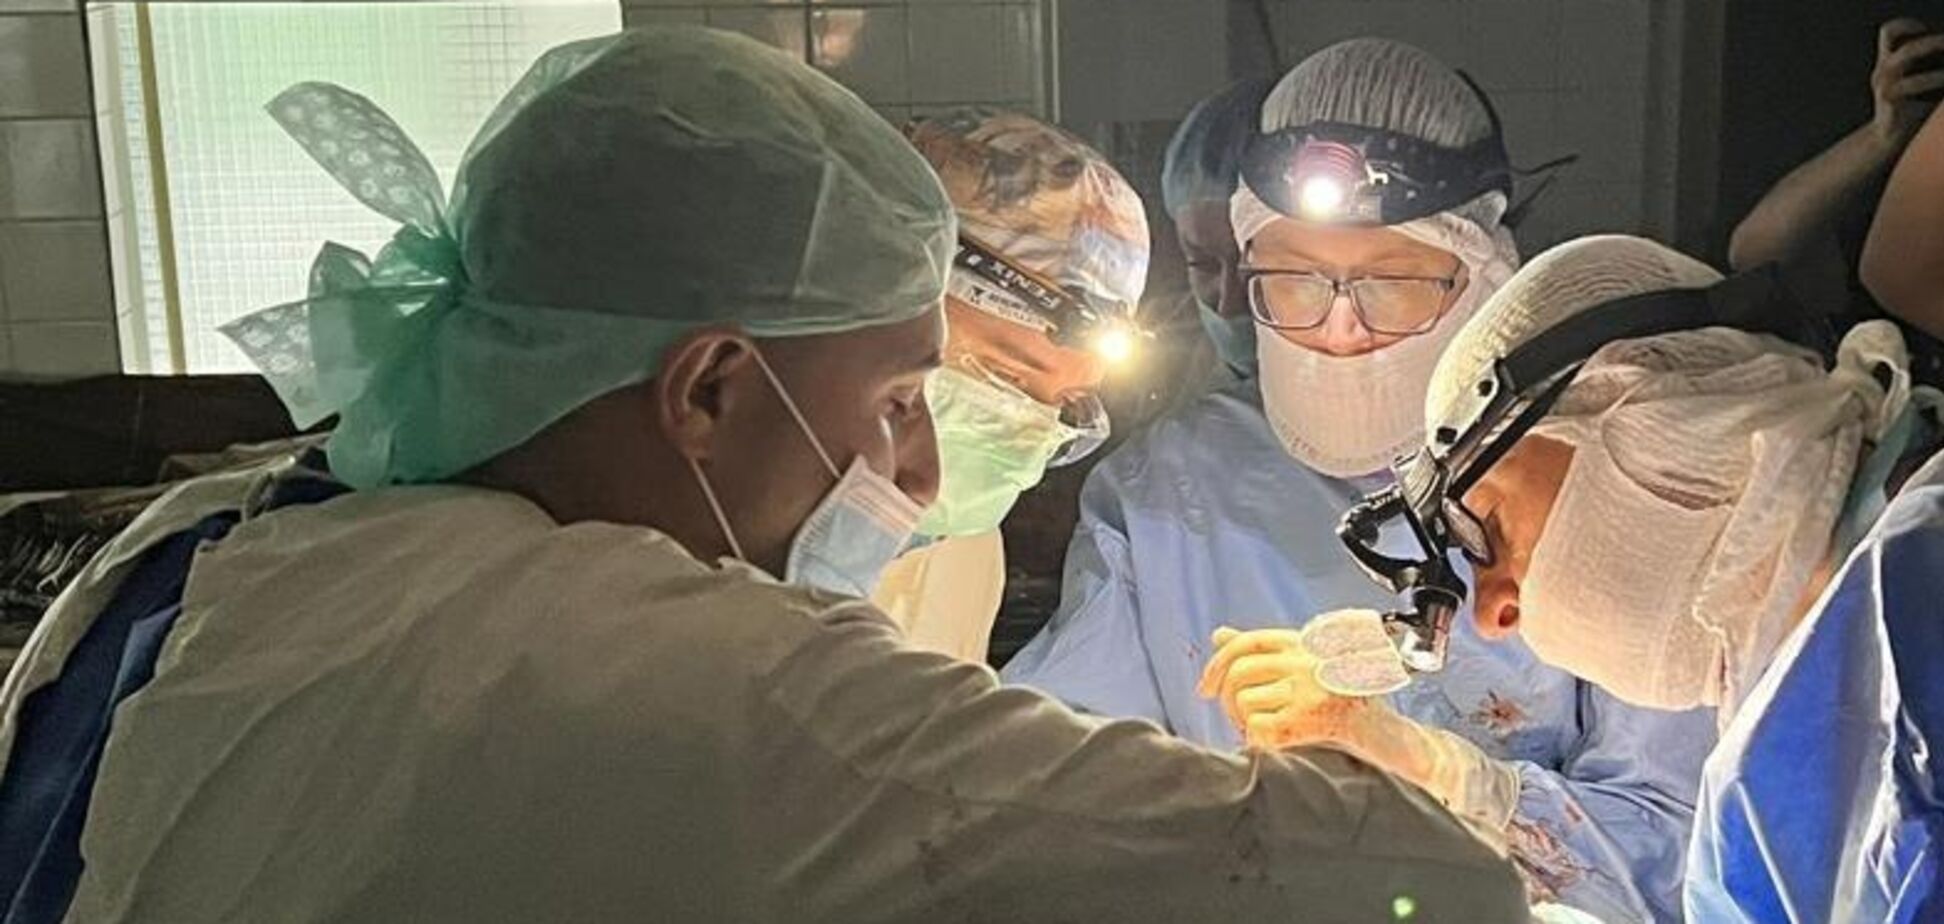 'Не дати померти, коли надія на нулі': у Дніпрі лікарі з ліхтариками провели унікальну операцію, врятувавши 23-річного пацієнта. Фото 